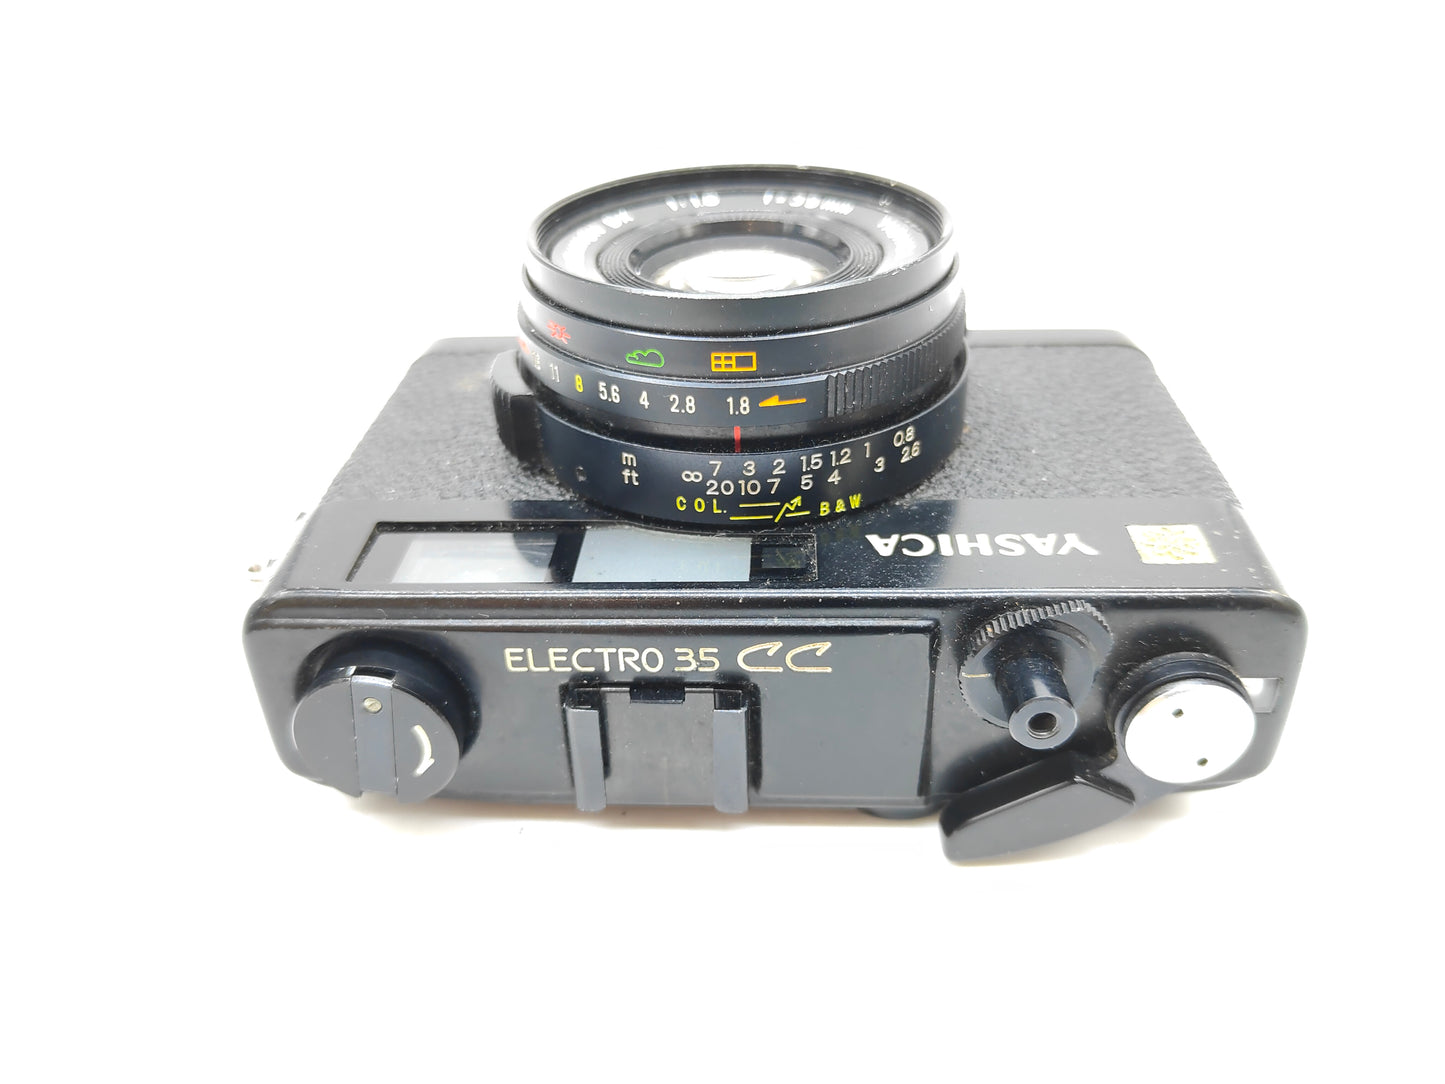 Yashica Electro 35 CC film camera